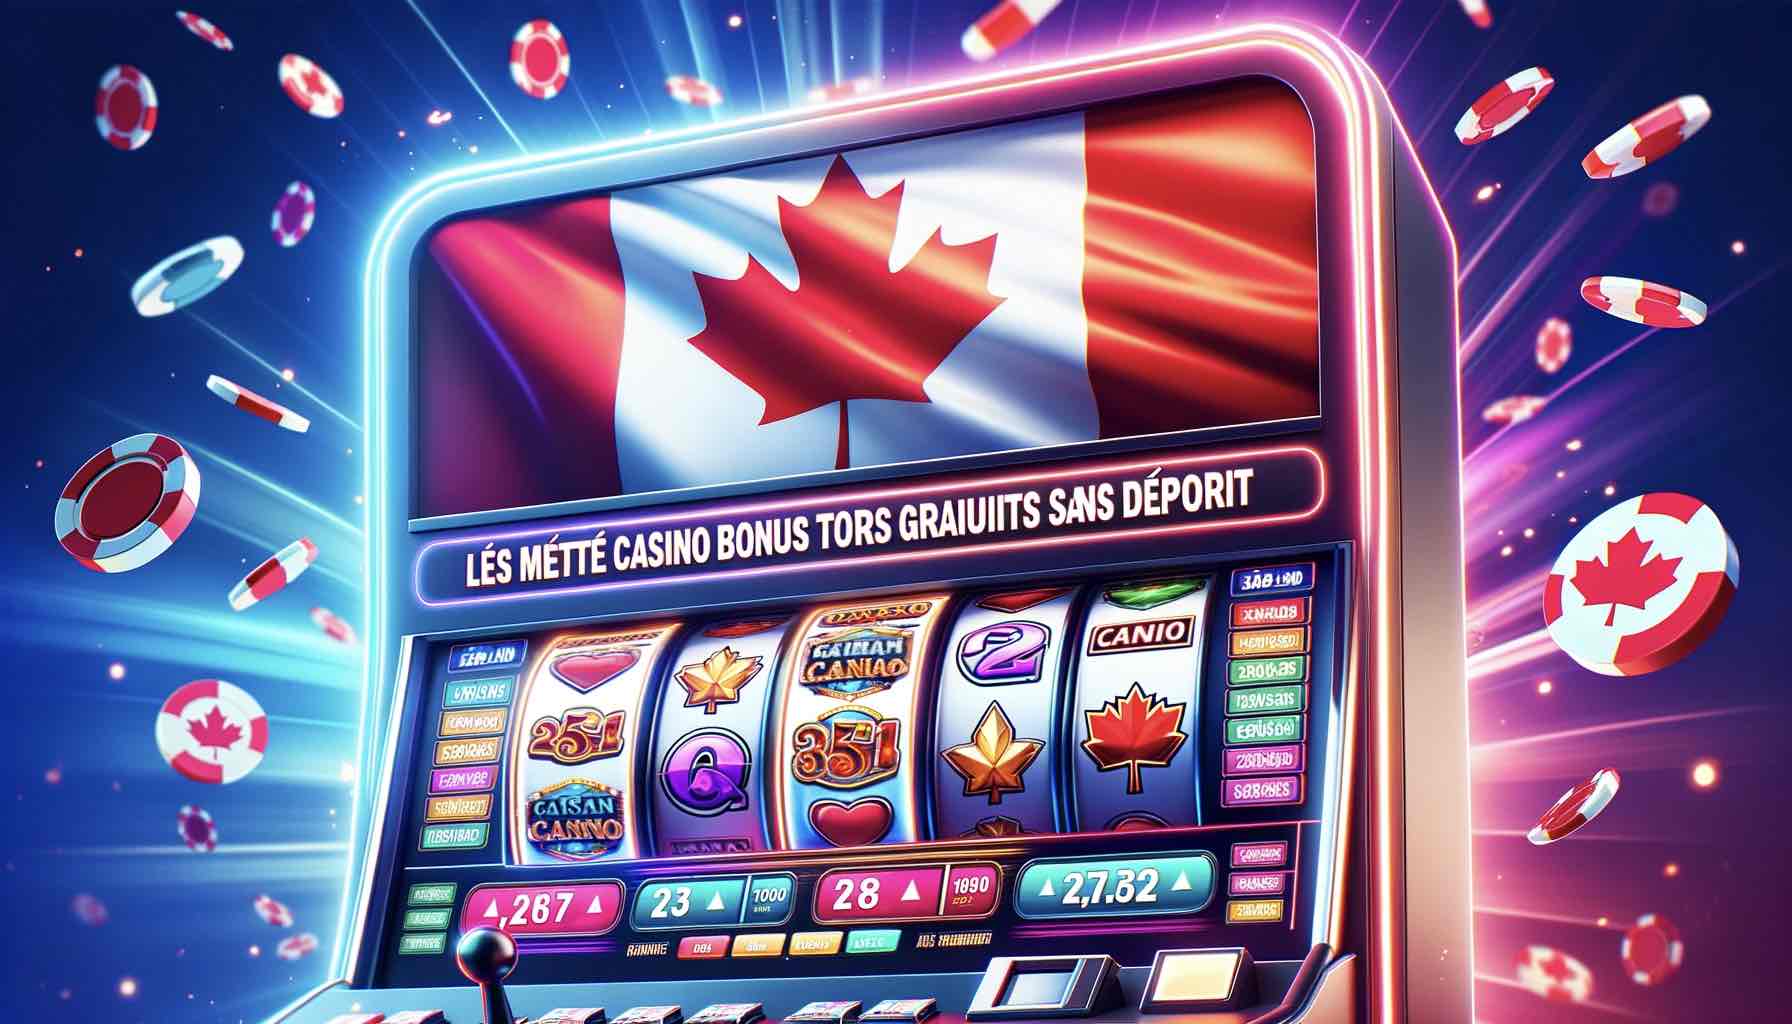 Les meilleur casino bonus tours gratuits sans dépôt